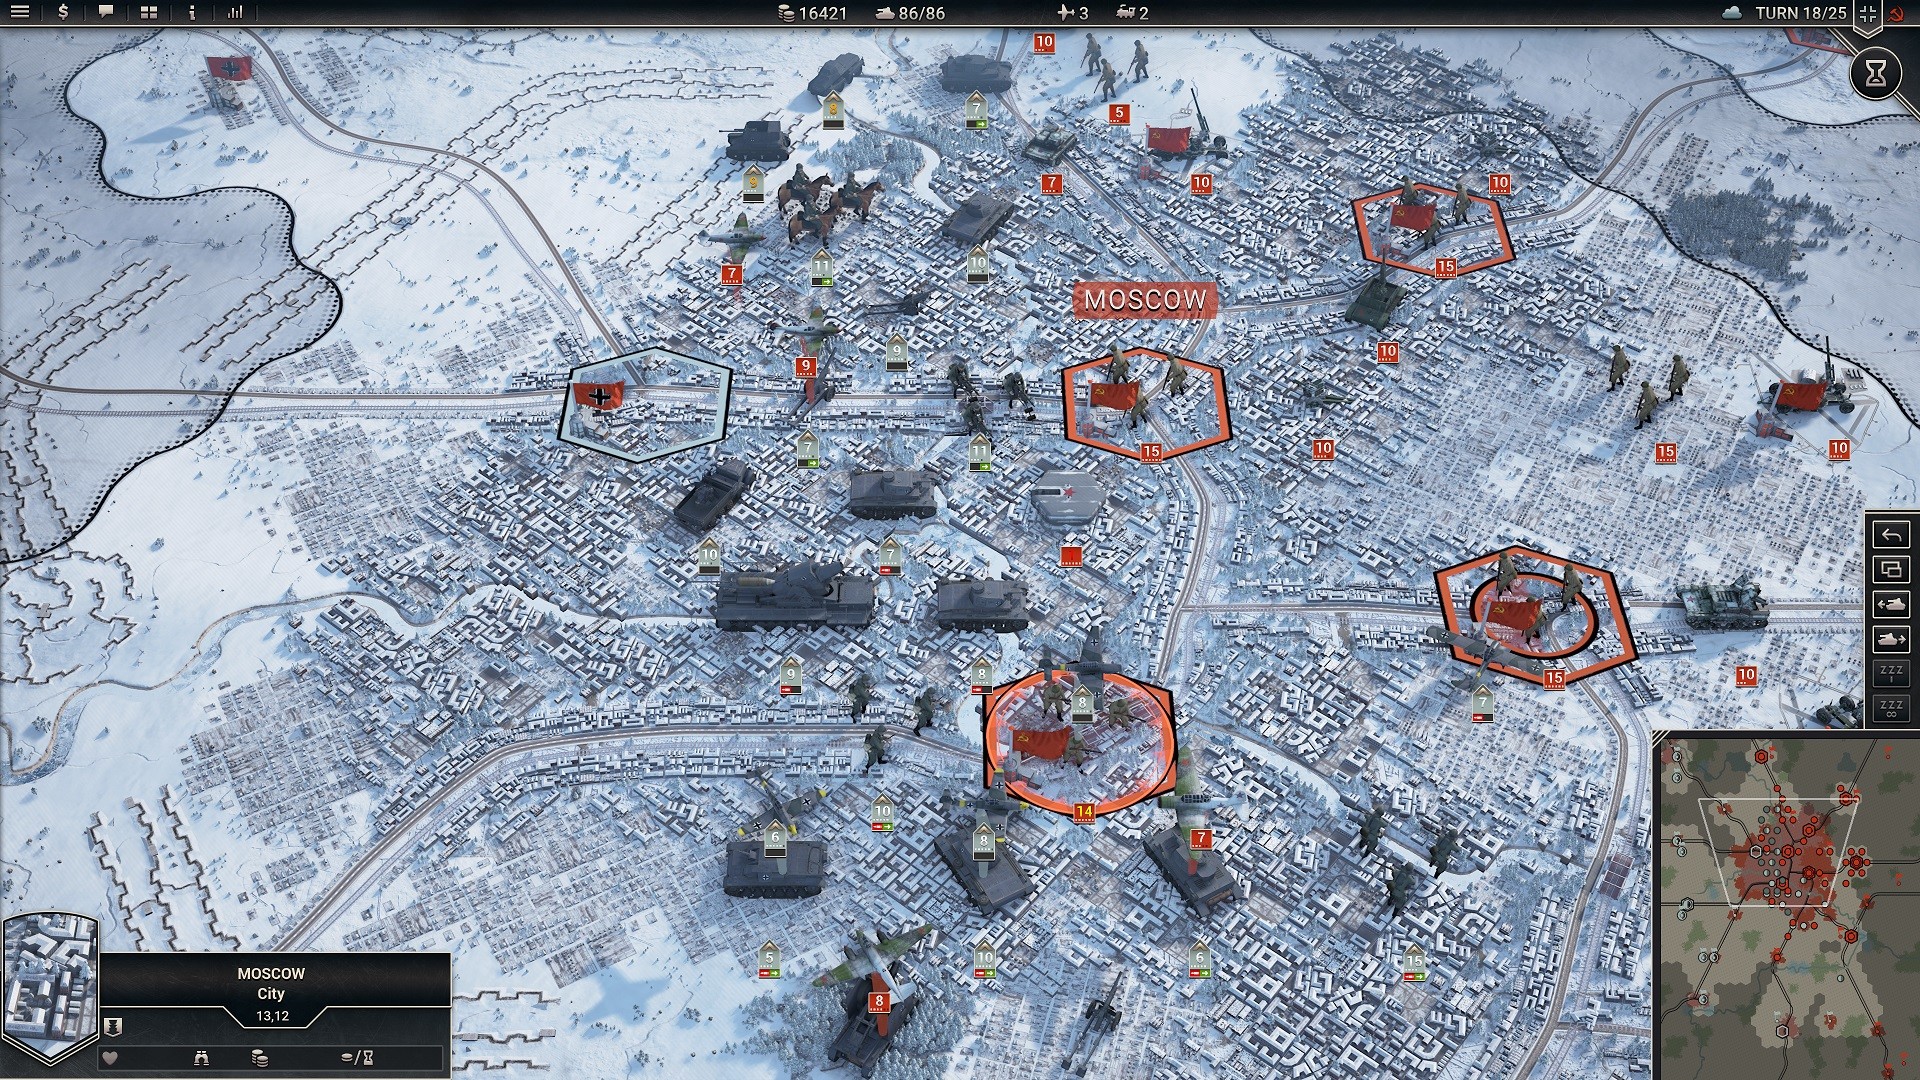 Bästa krigsspel: Panzer Corps 2. Bild visar en karta med olika tankar på den